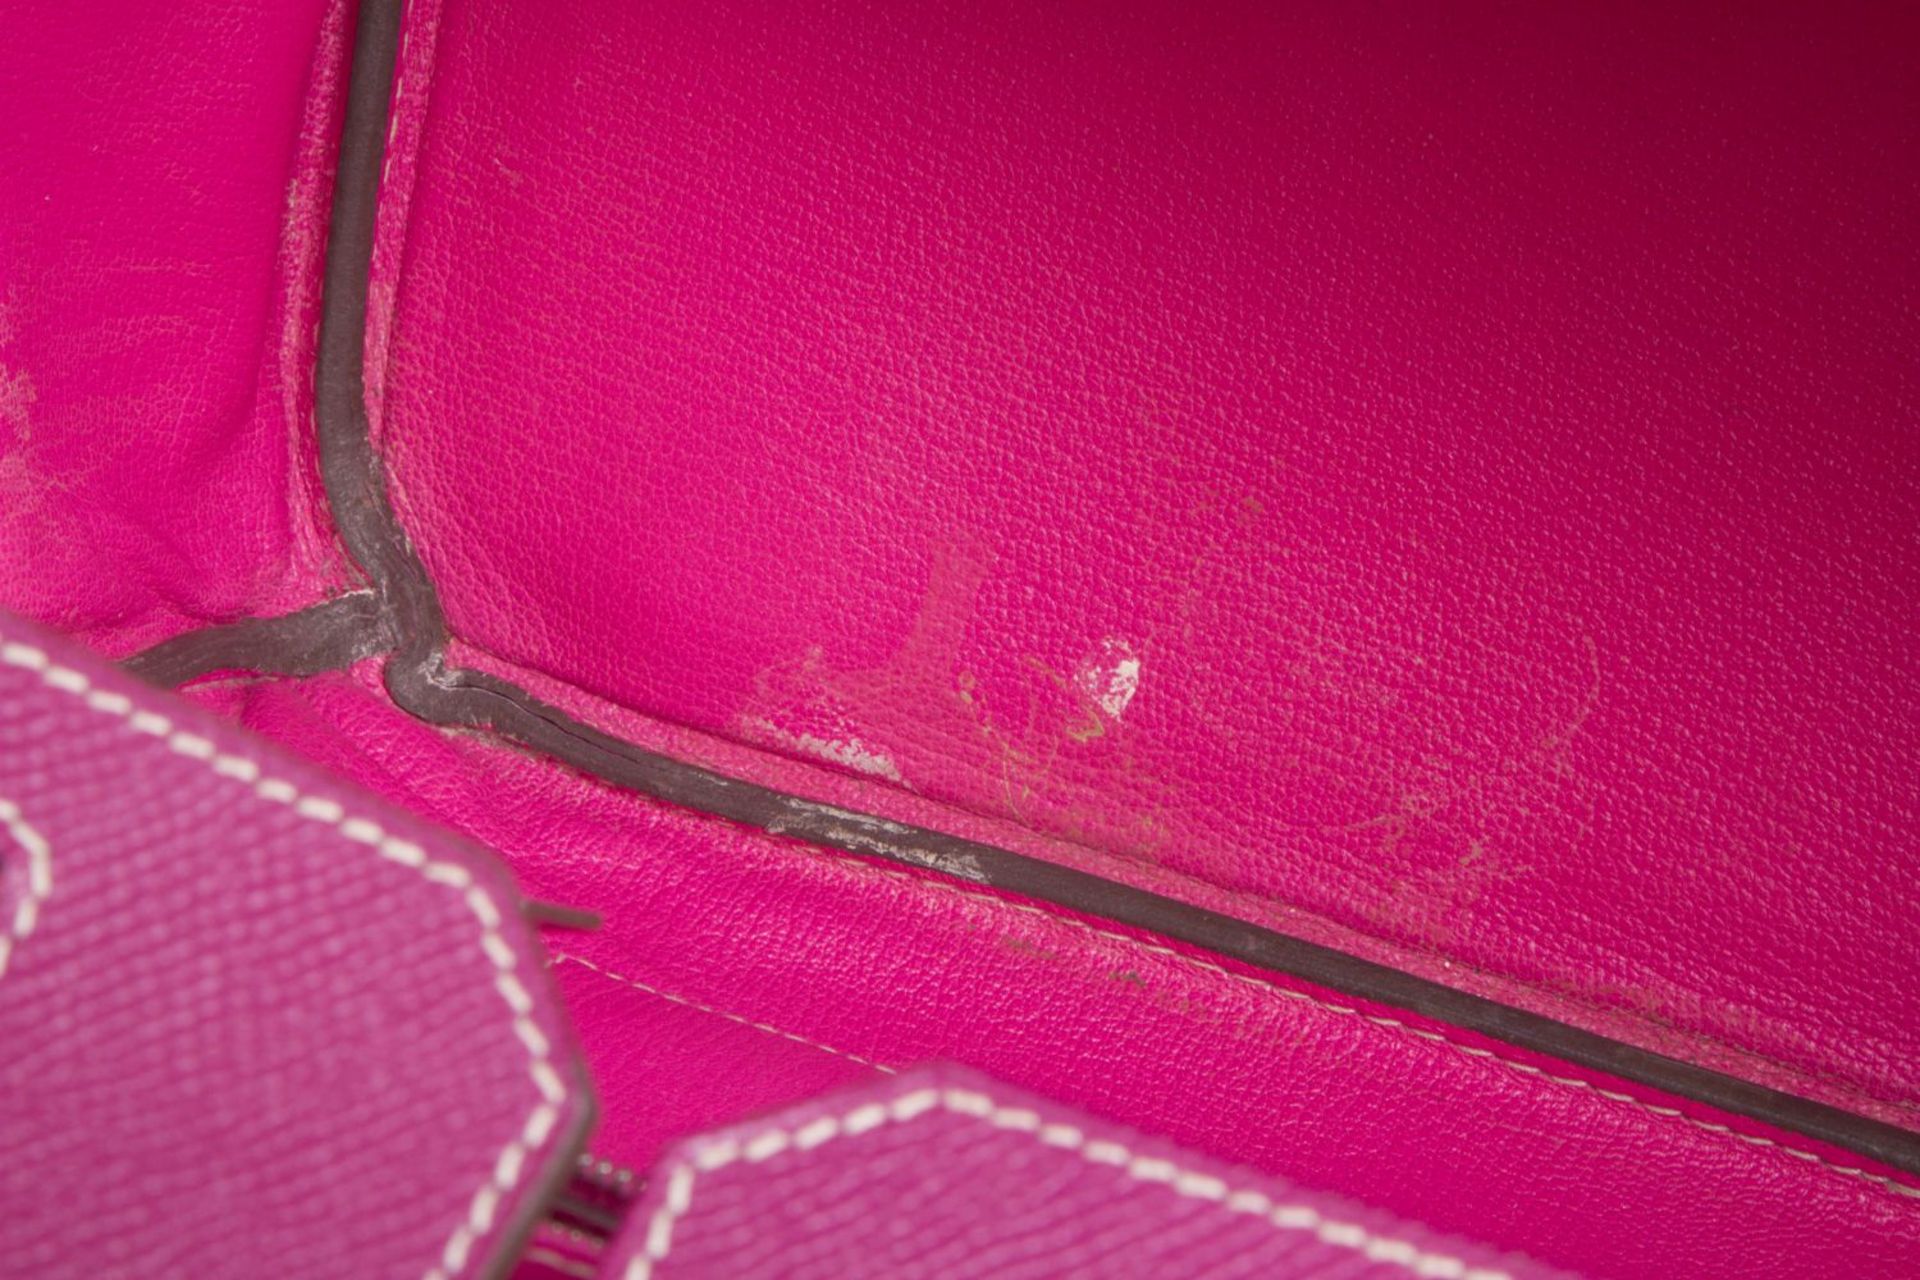 Hermès ''Birkin Bag 35'' Kalbsleder in Fuchsia mit weißer Naht. Beschläge mit Palladiumauflage. Trap - Bild 8 aus 10